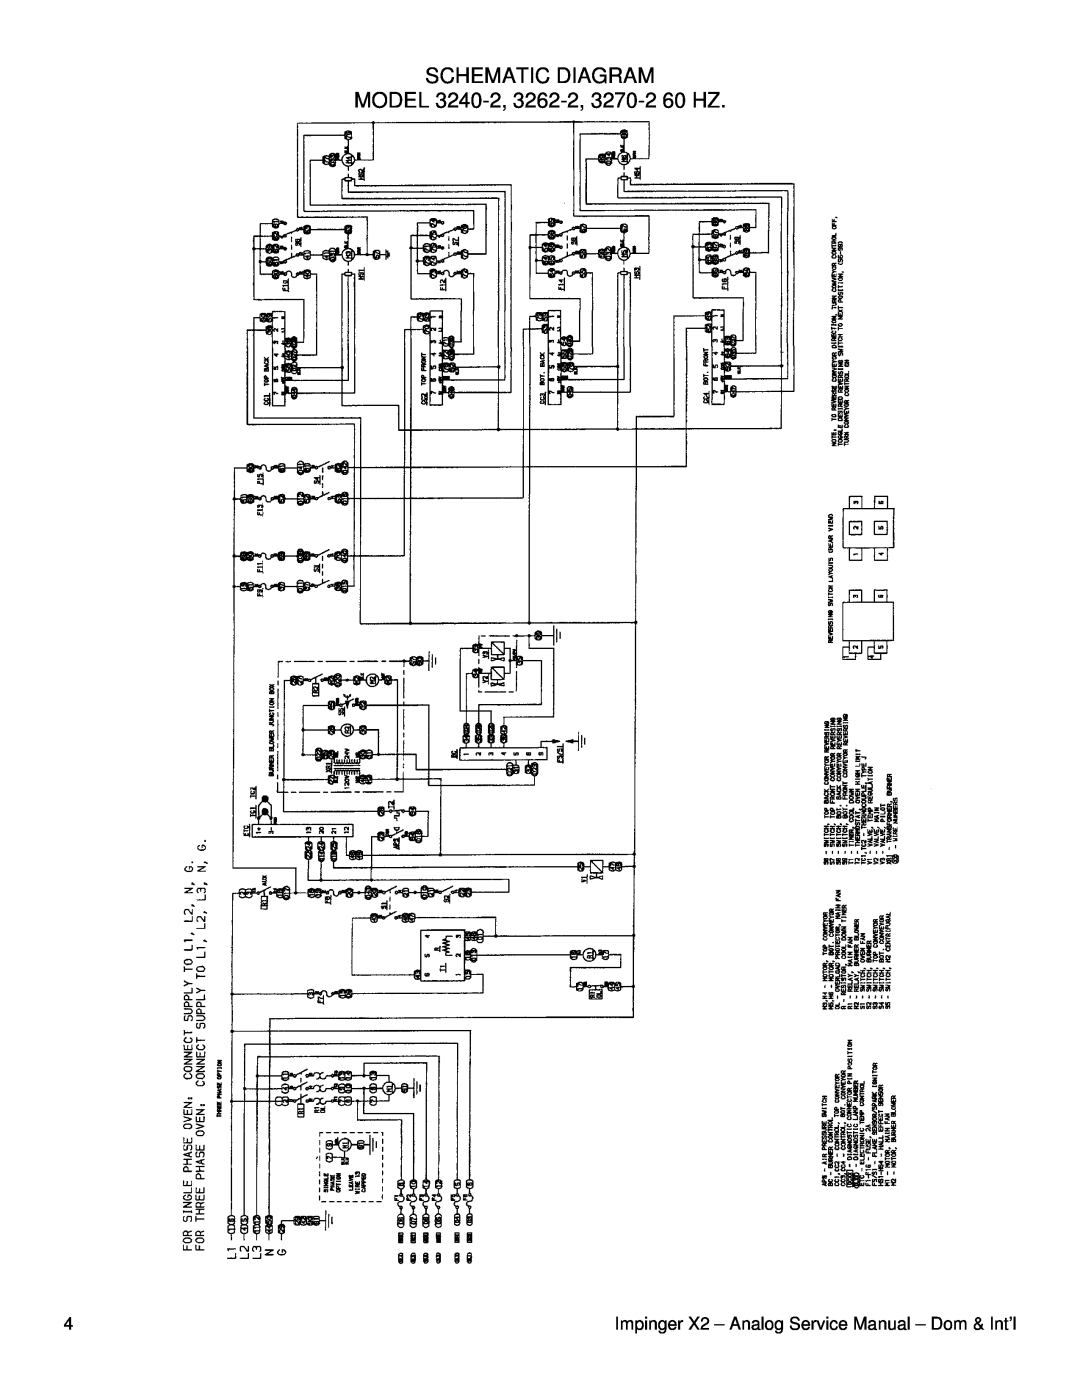 Lincoln service manual Schematic Diagram, MODEL 3240-2, 3262-2, 3270-260 HZ 